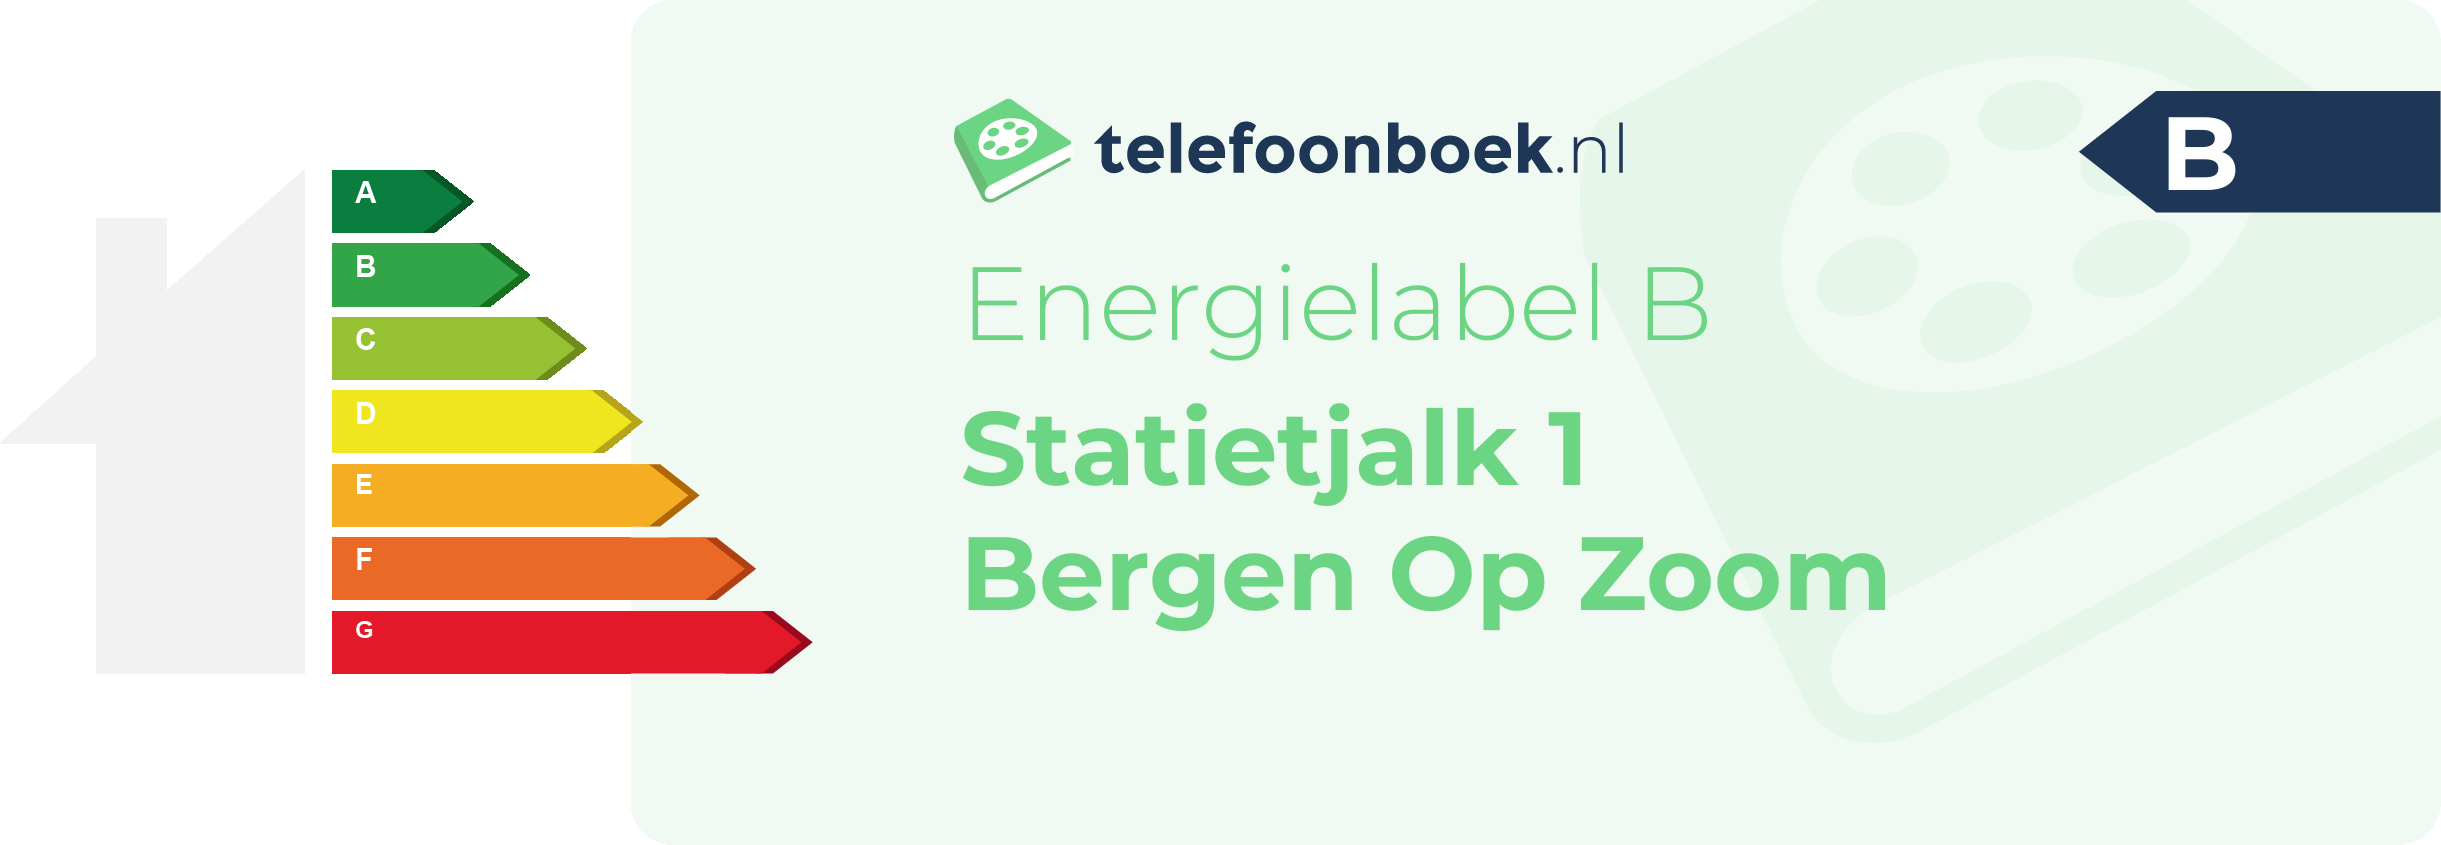 Energielabel Statietjalk 1 Bergen Op Zoom